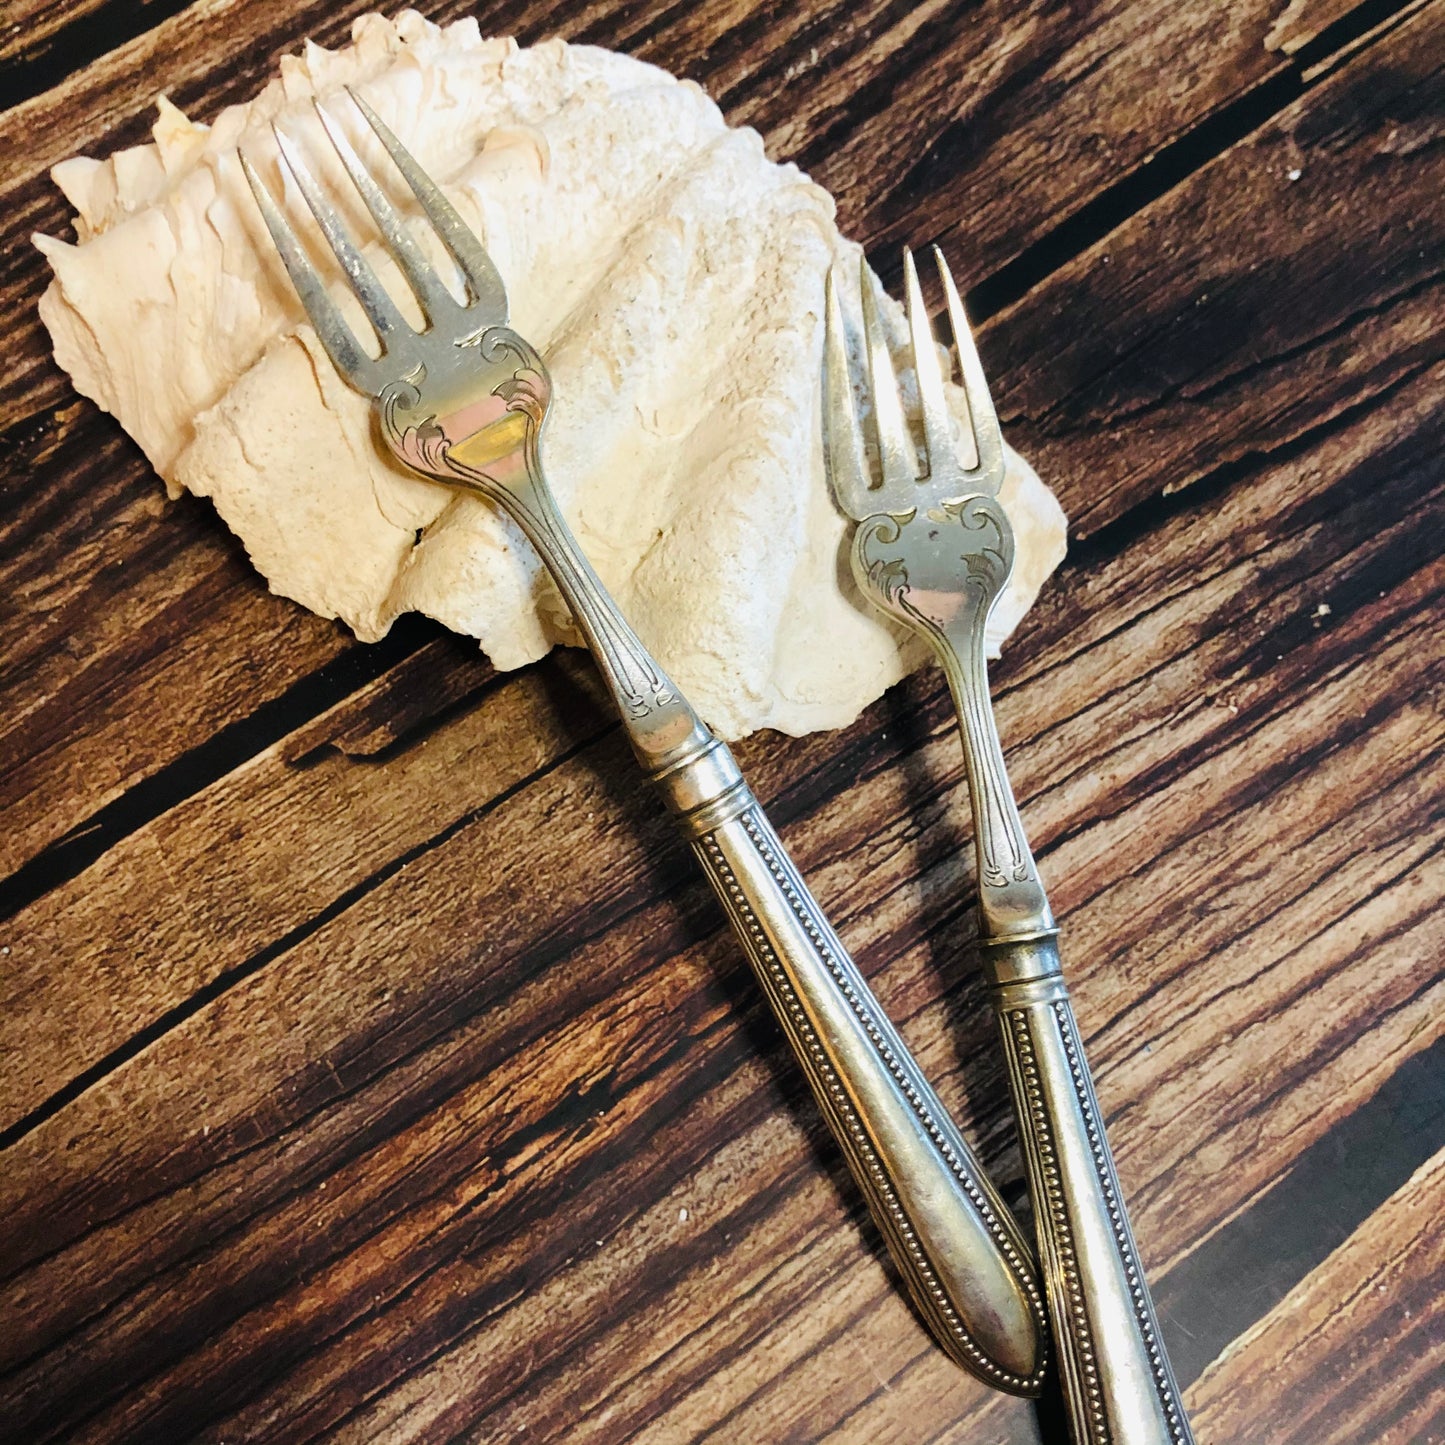 Antique Silver Plate Dinner Forks | Unusual Art Nouveau Forks